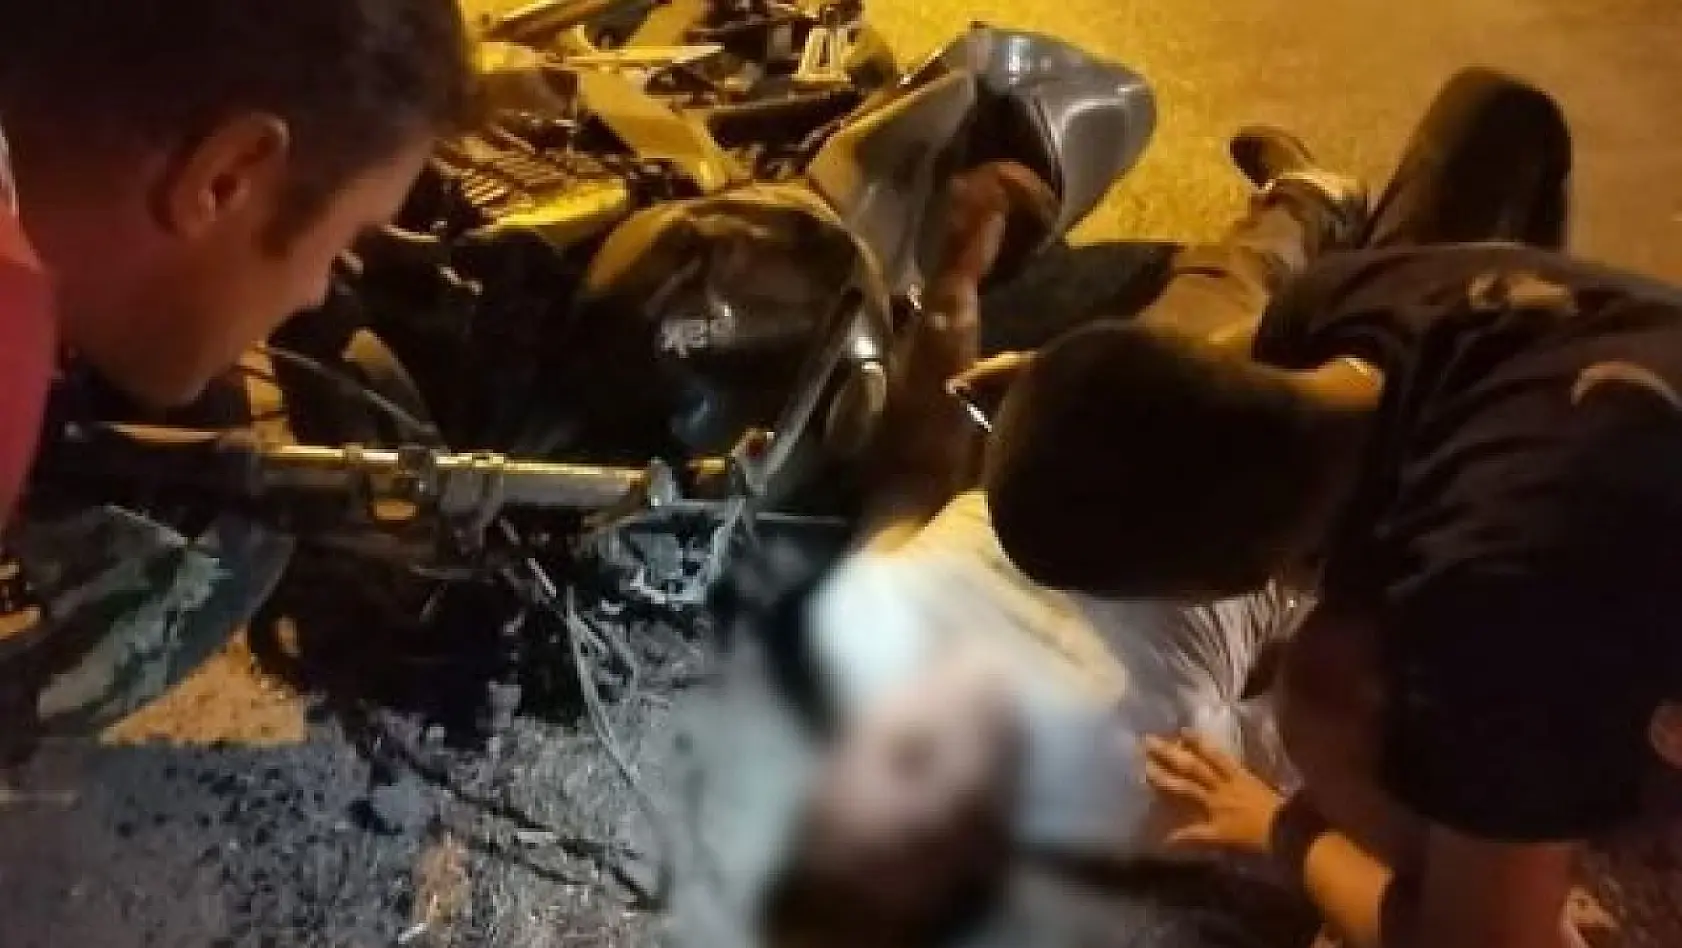 Manisa'da motosikletler çarpıştı: 1 ölü, 2 ağır yaralı